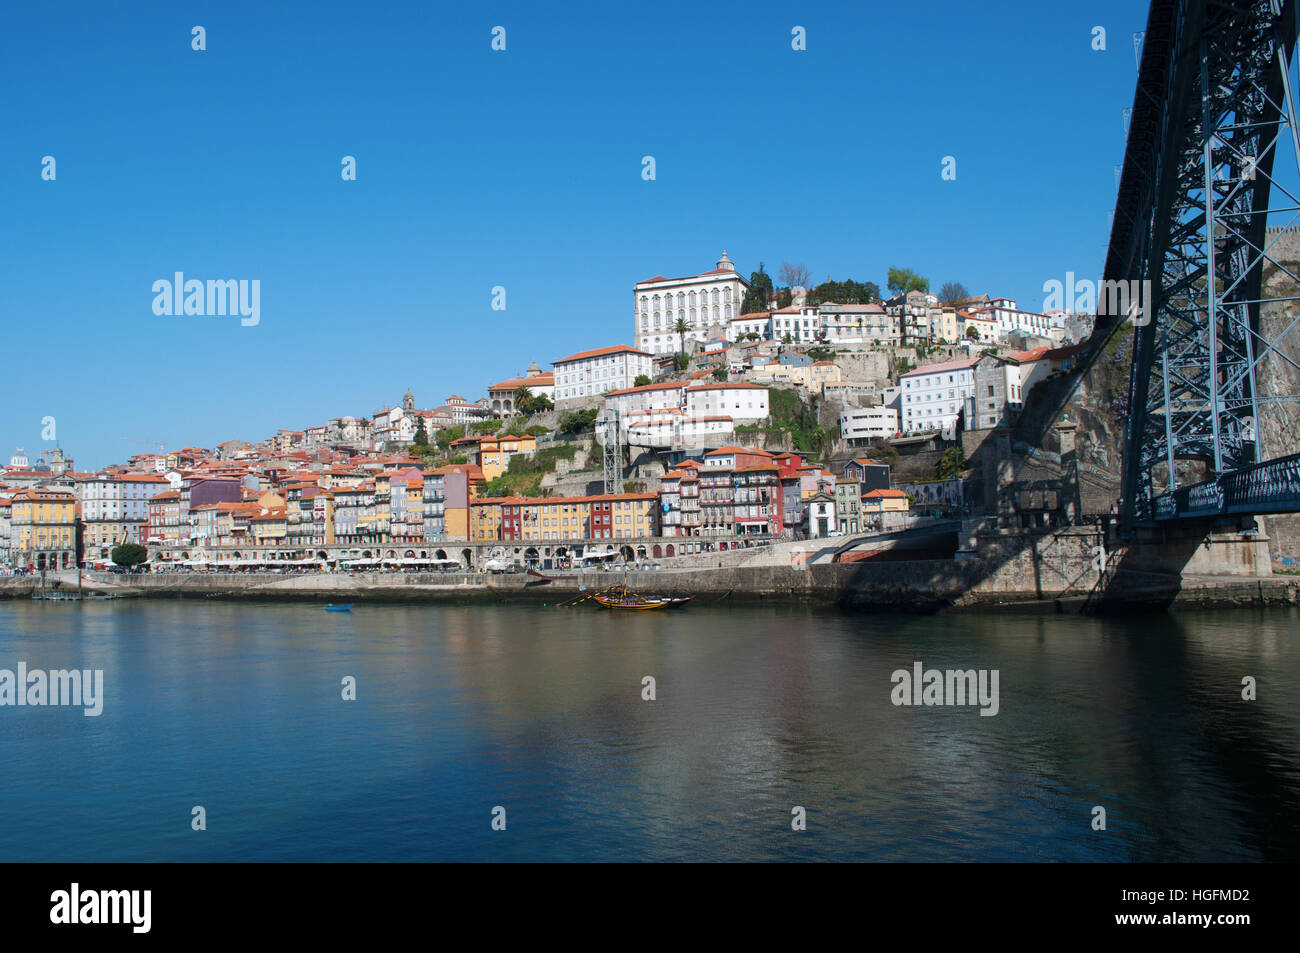 Le Portugal, l'Europe : l'horizon de Porto, avec vue sur le pont Luiz I sur le fleuve Douro entre Porto et Vila Nova de Gaia Banque D'Images